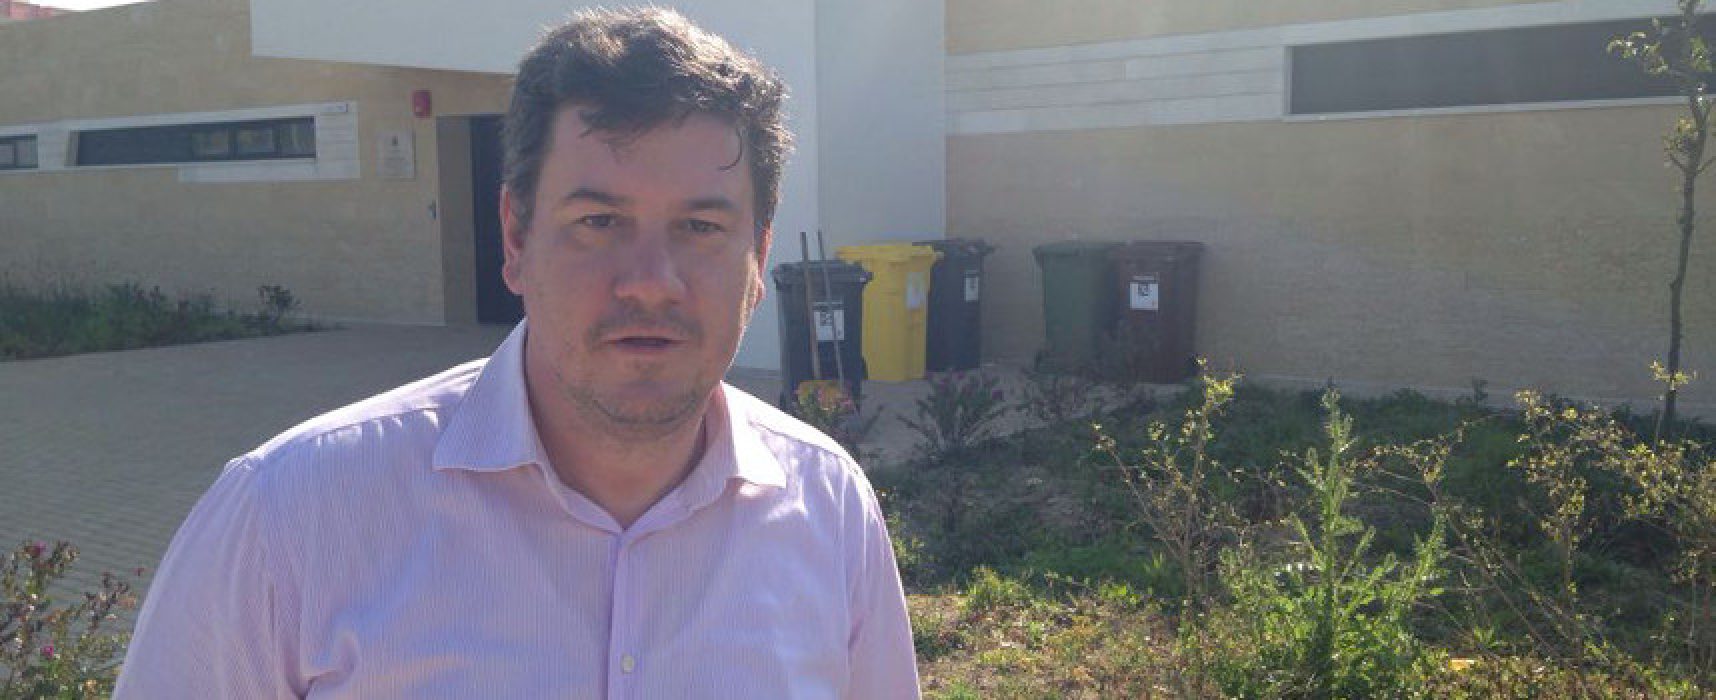 Sergio Silvestris (FI) ripulisce dai rifiuti l’area esterna della scuola “Don Pino Puglisi”